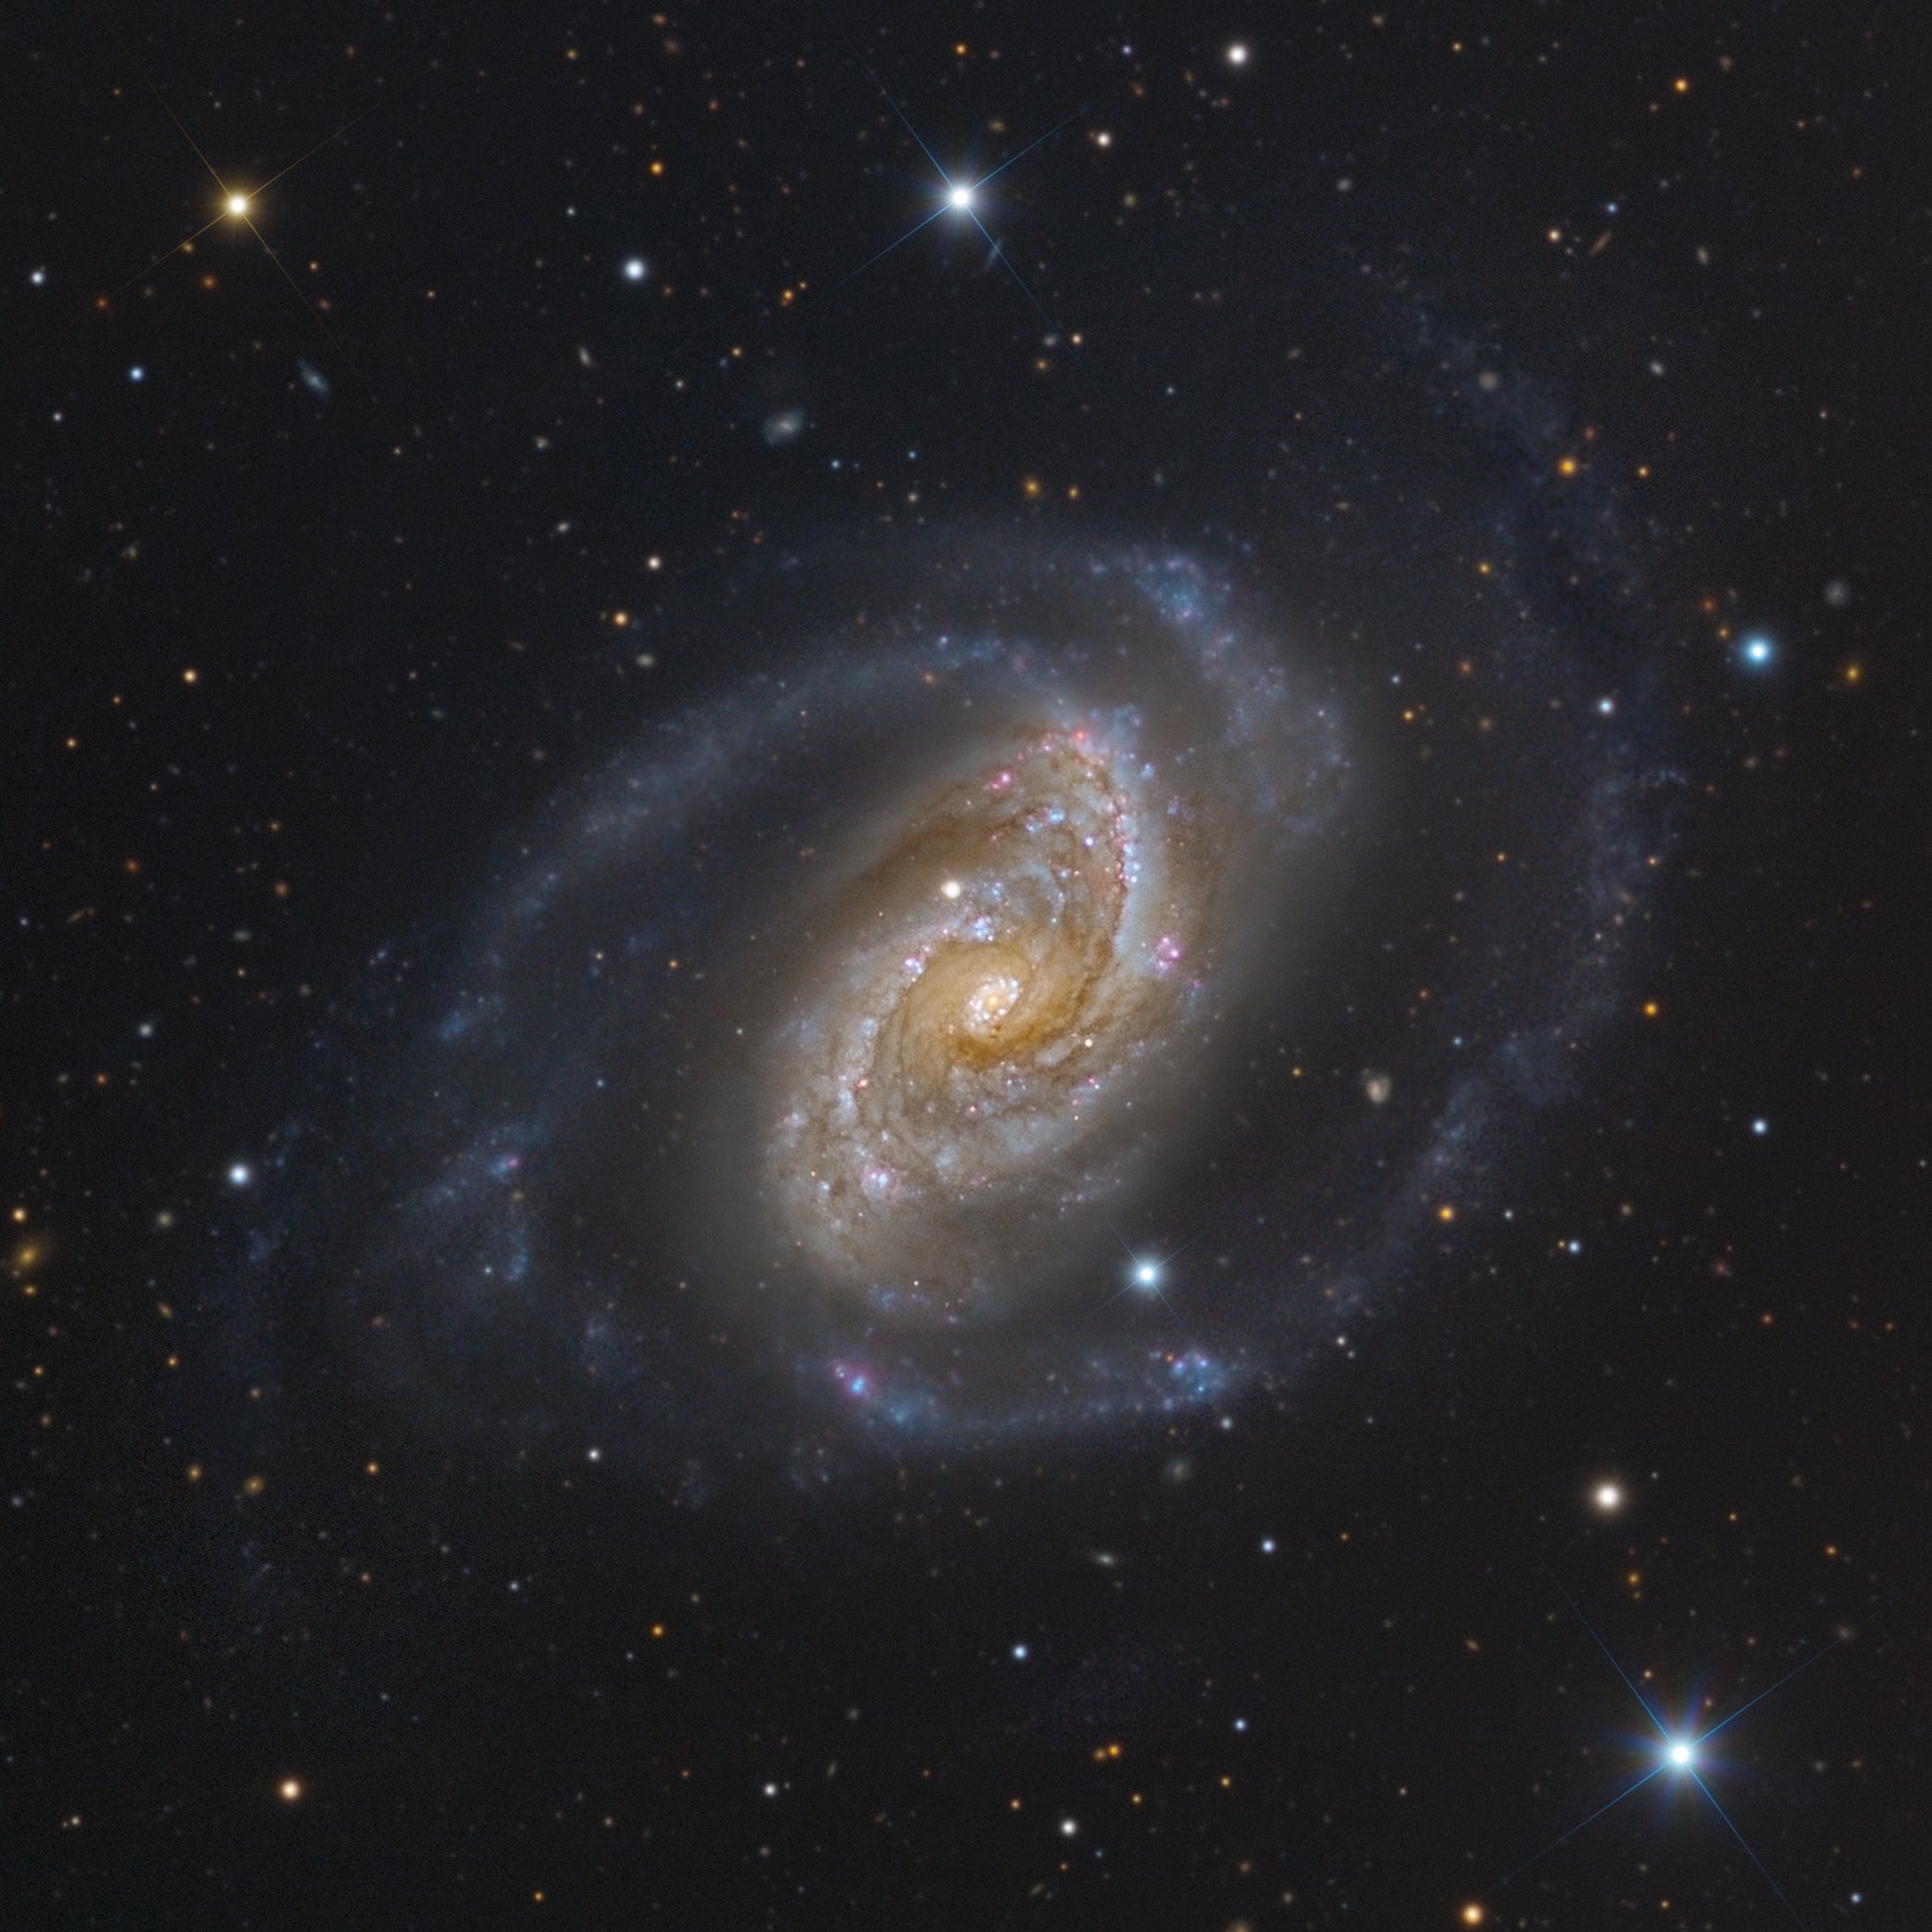 NGC 5248 